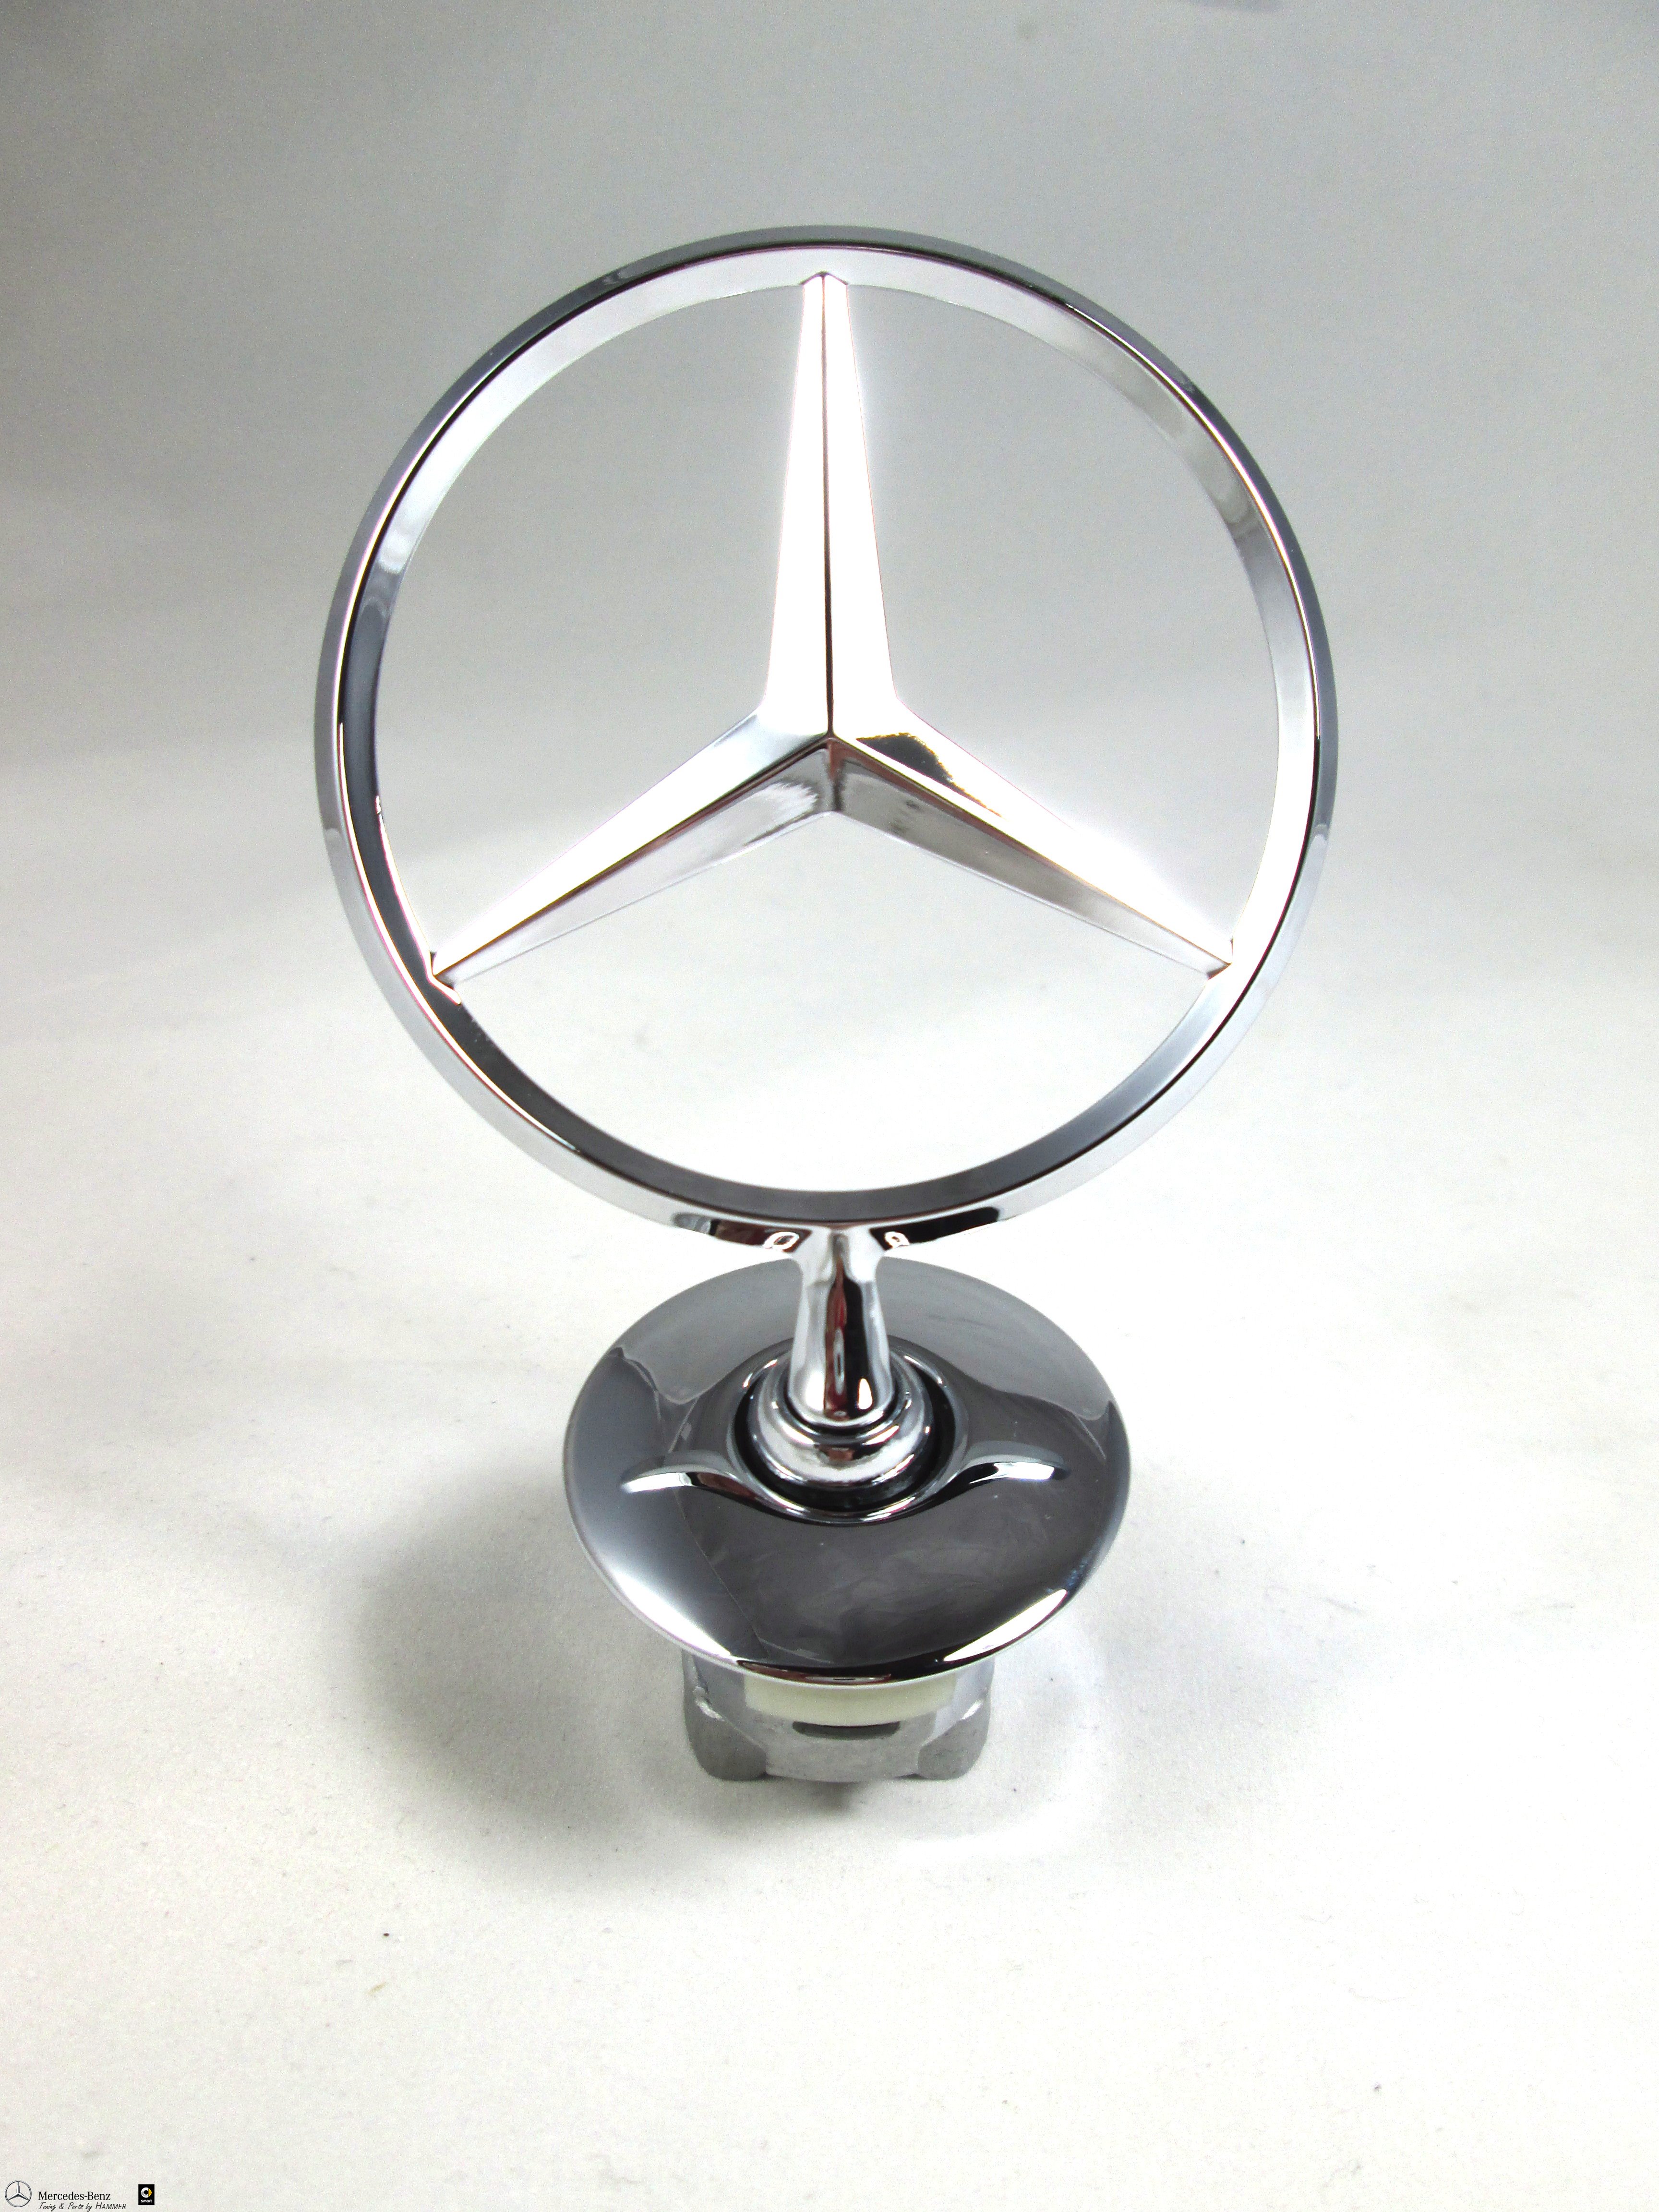 Mercedes-Benz Stern auf der Motorhaube der neuen E-Klasse in